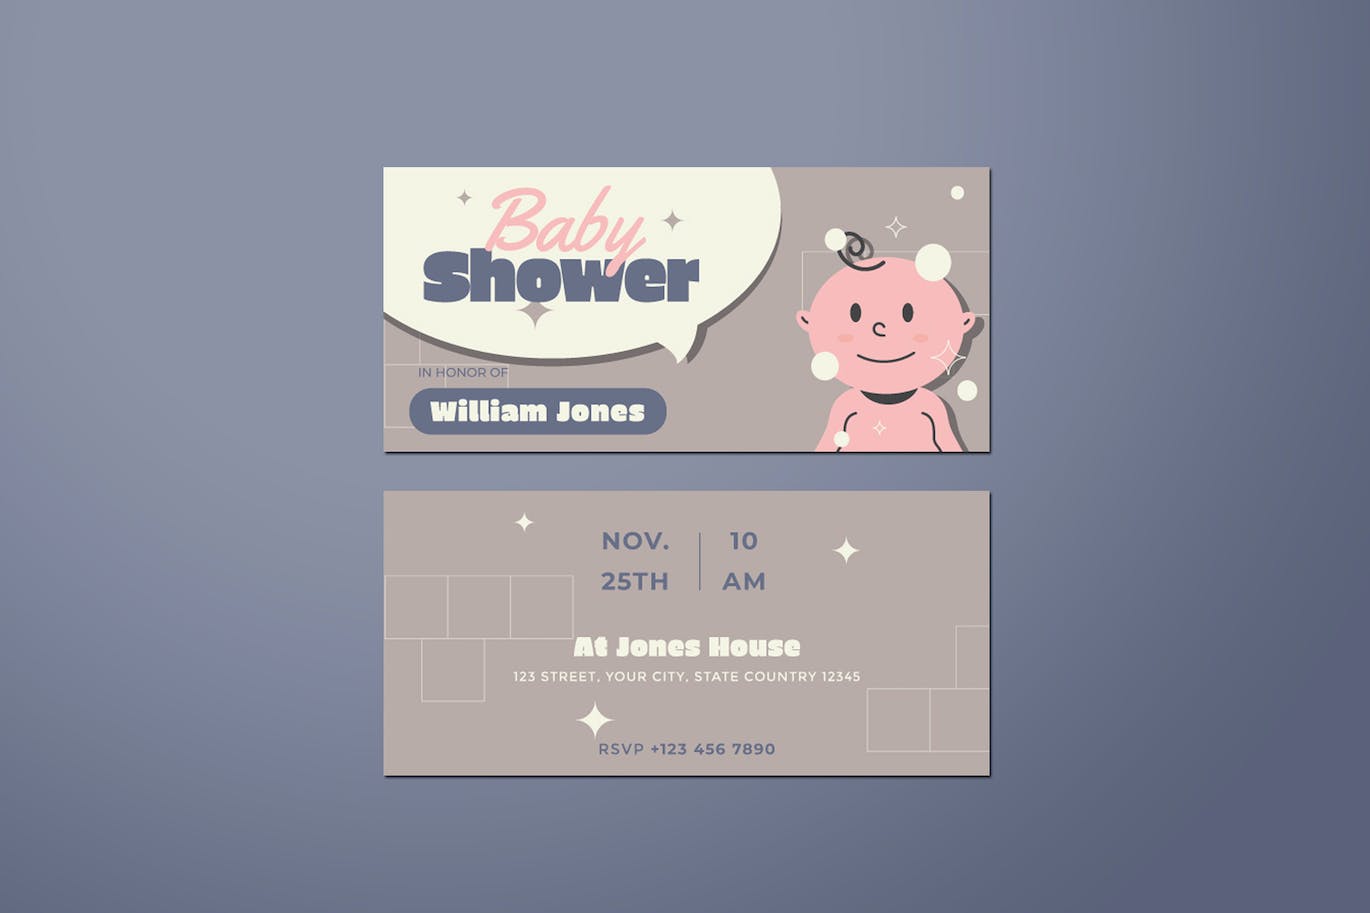 婴孩派对DL传单设计模板 Baby Shower DL Flyer 设计素材 第3张